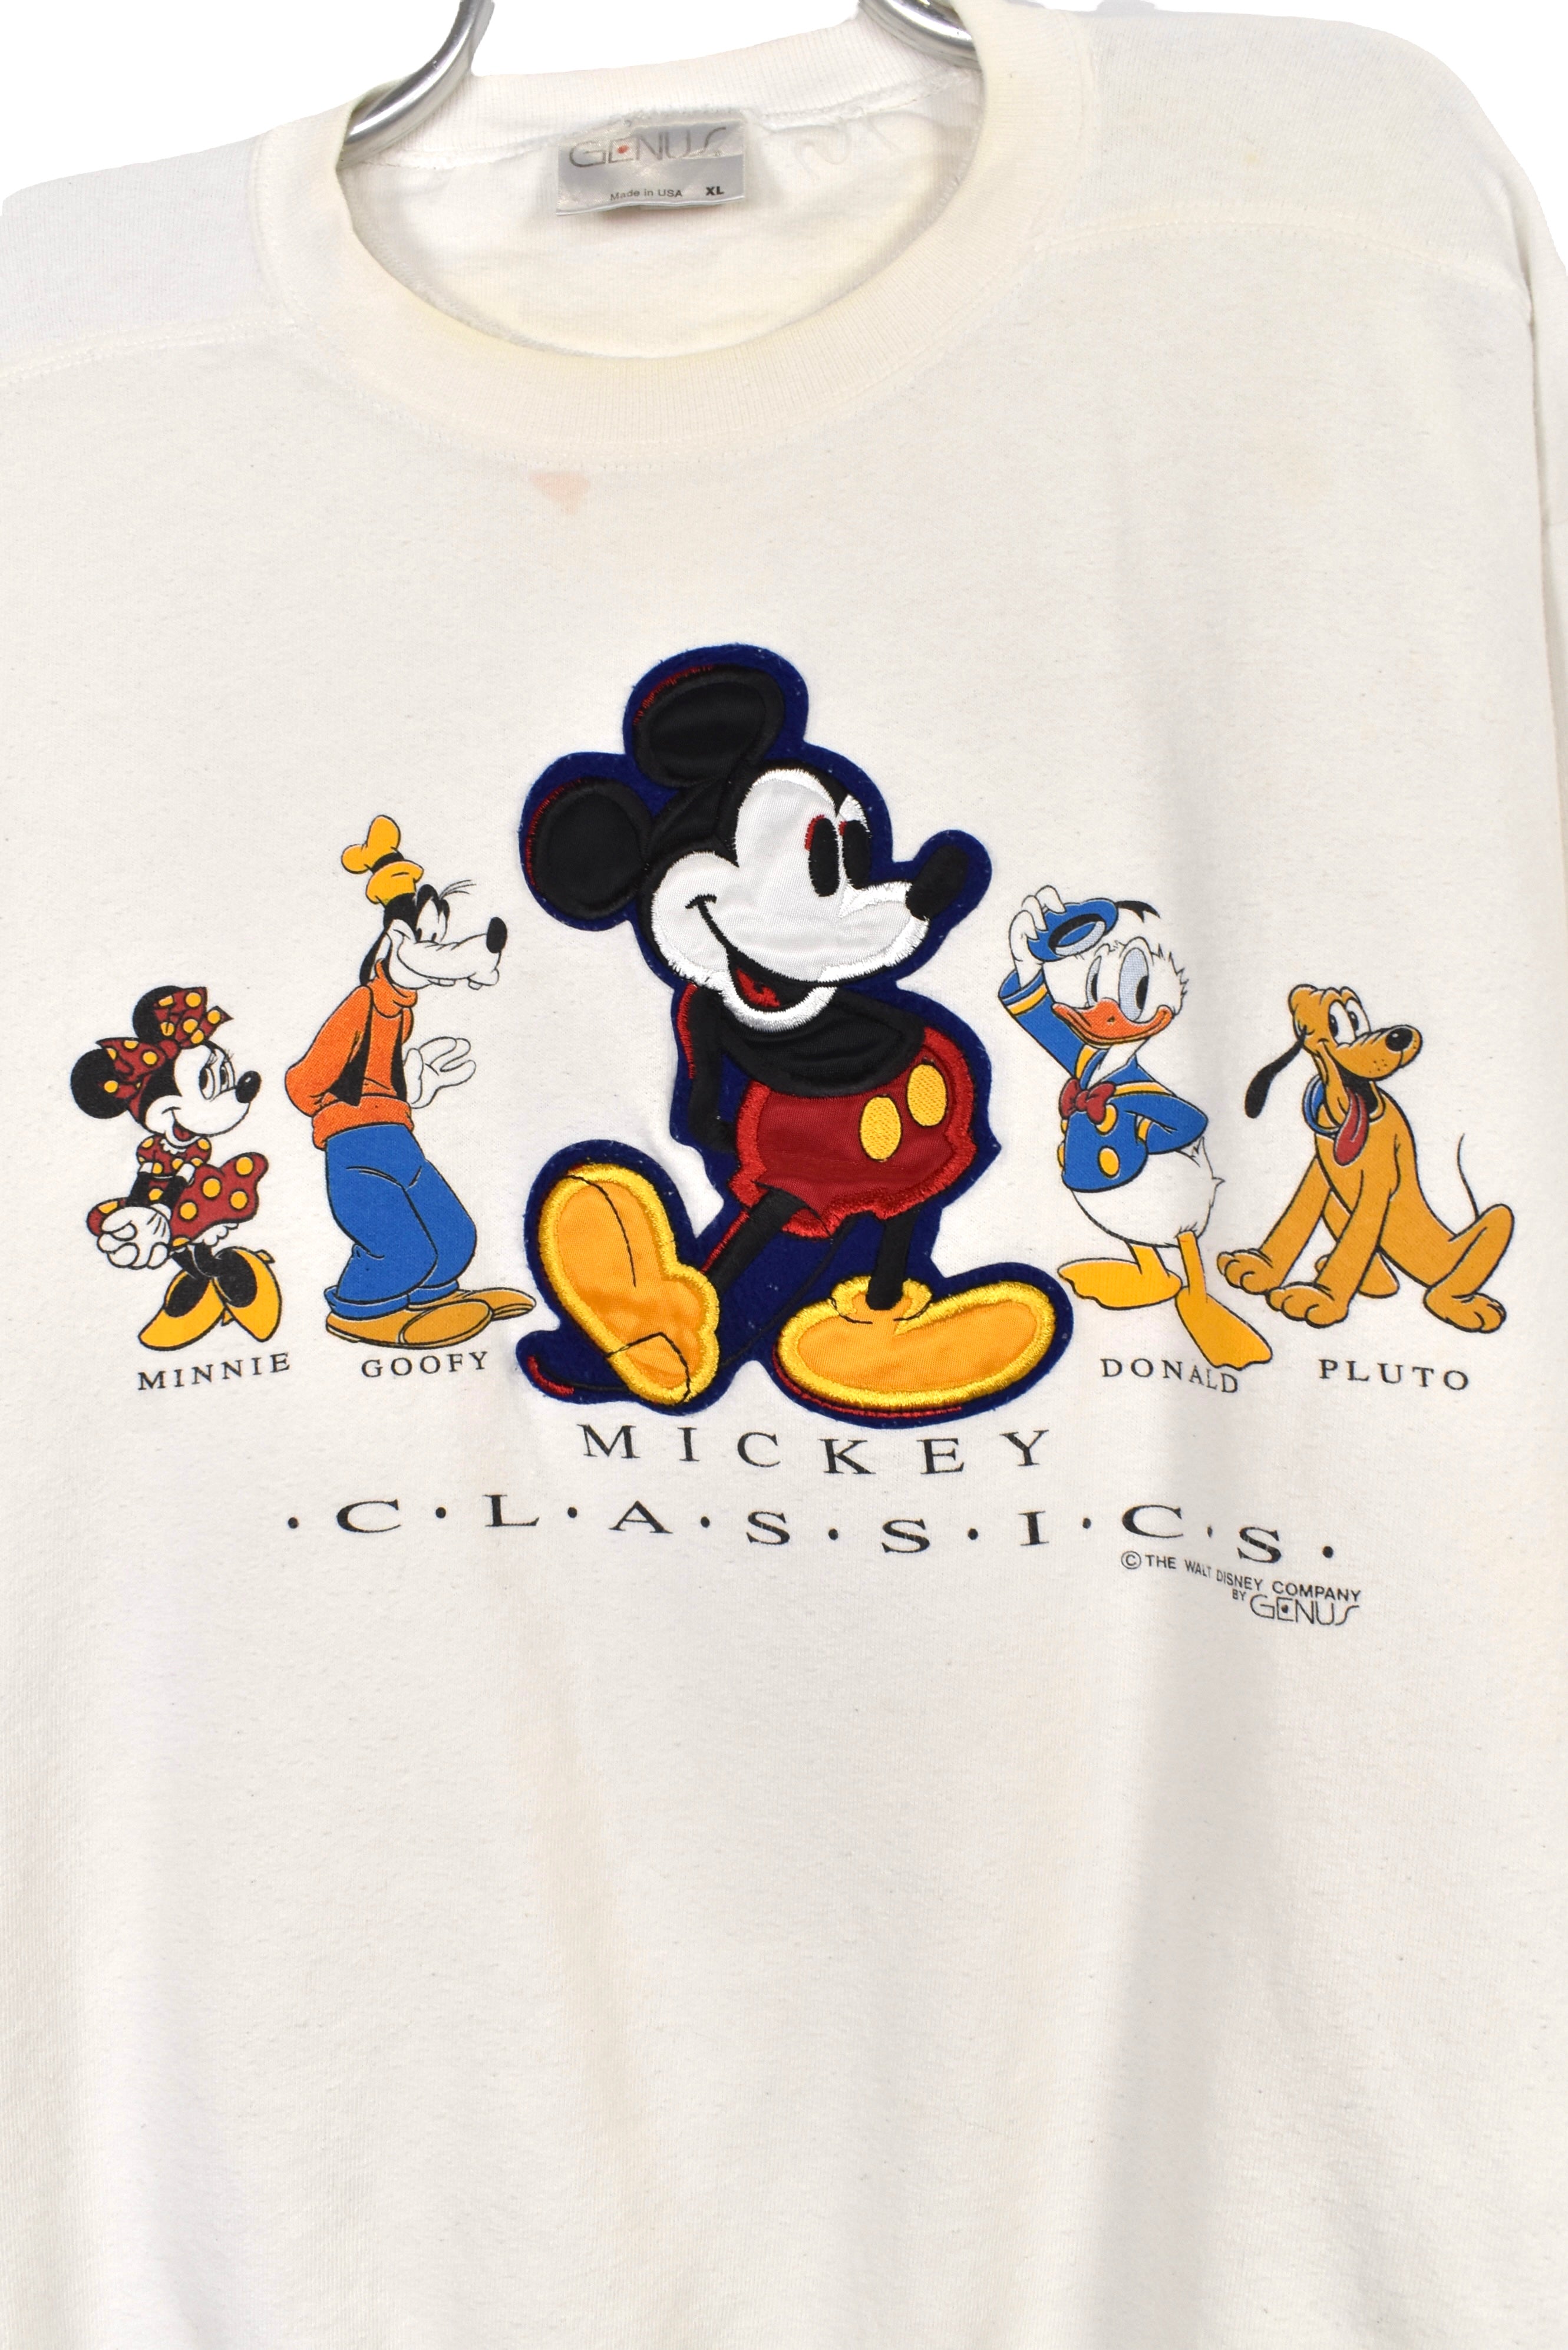 Vintage Mickey & friends sweatshirt (XXL), white Disney graphic crewneck